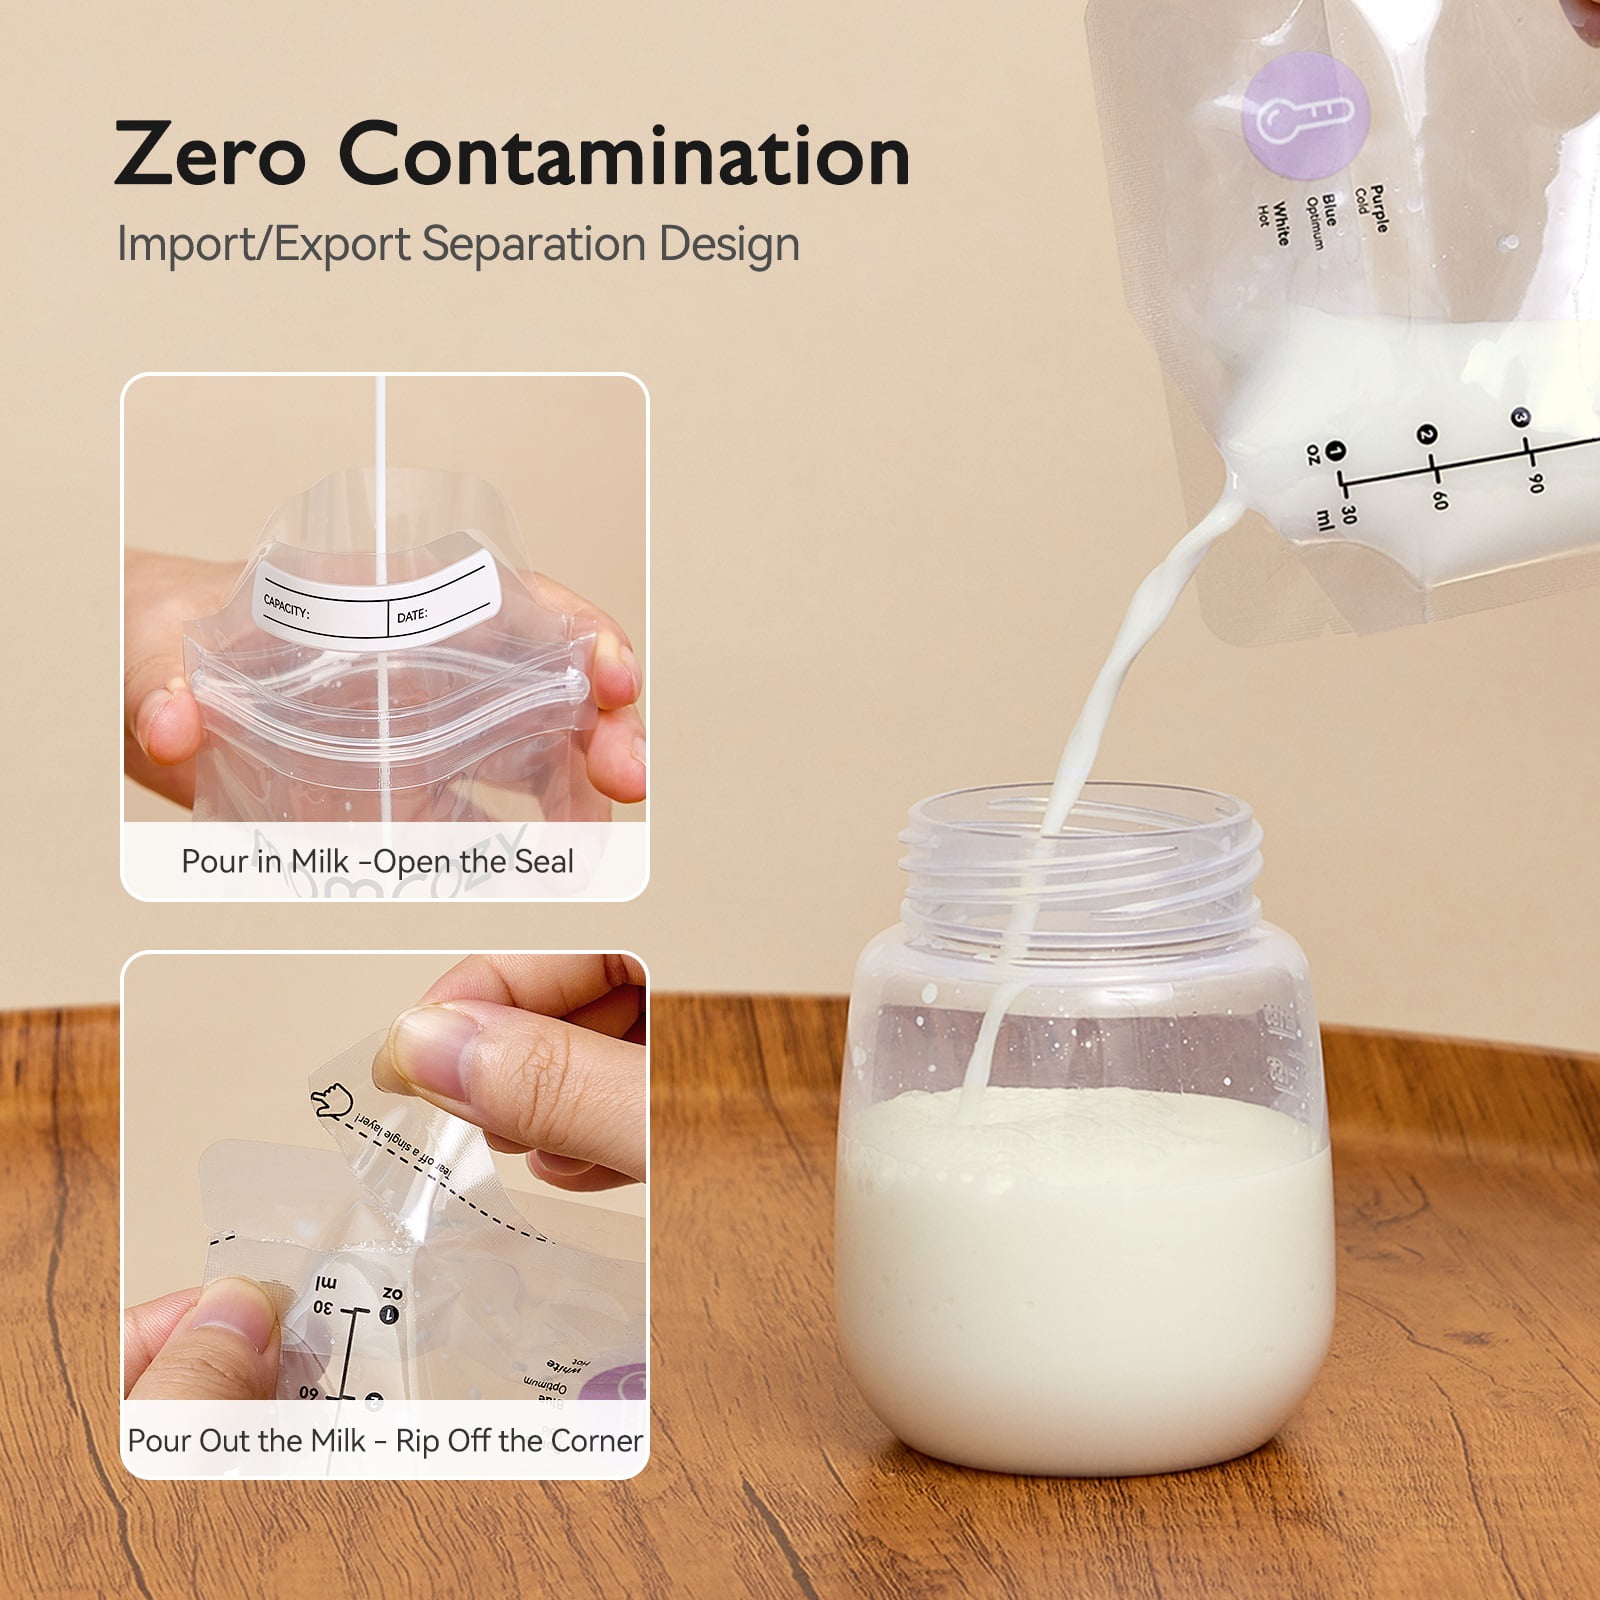 Momcozy Nutri Smart Baby Bottle Warmer and Breastmilk Storage Bags